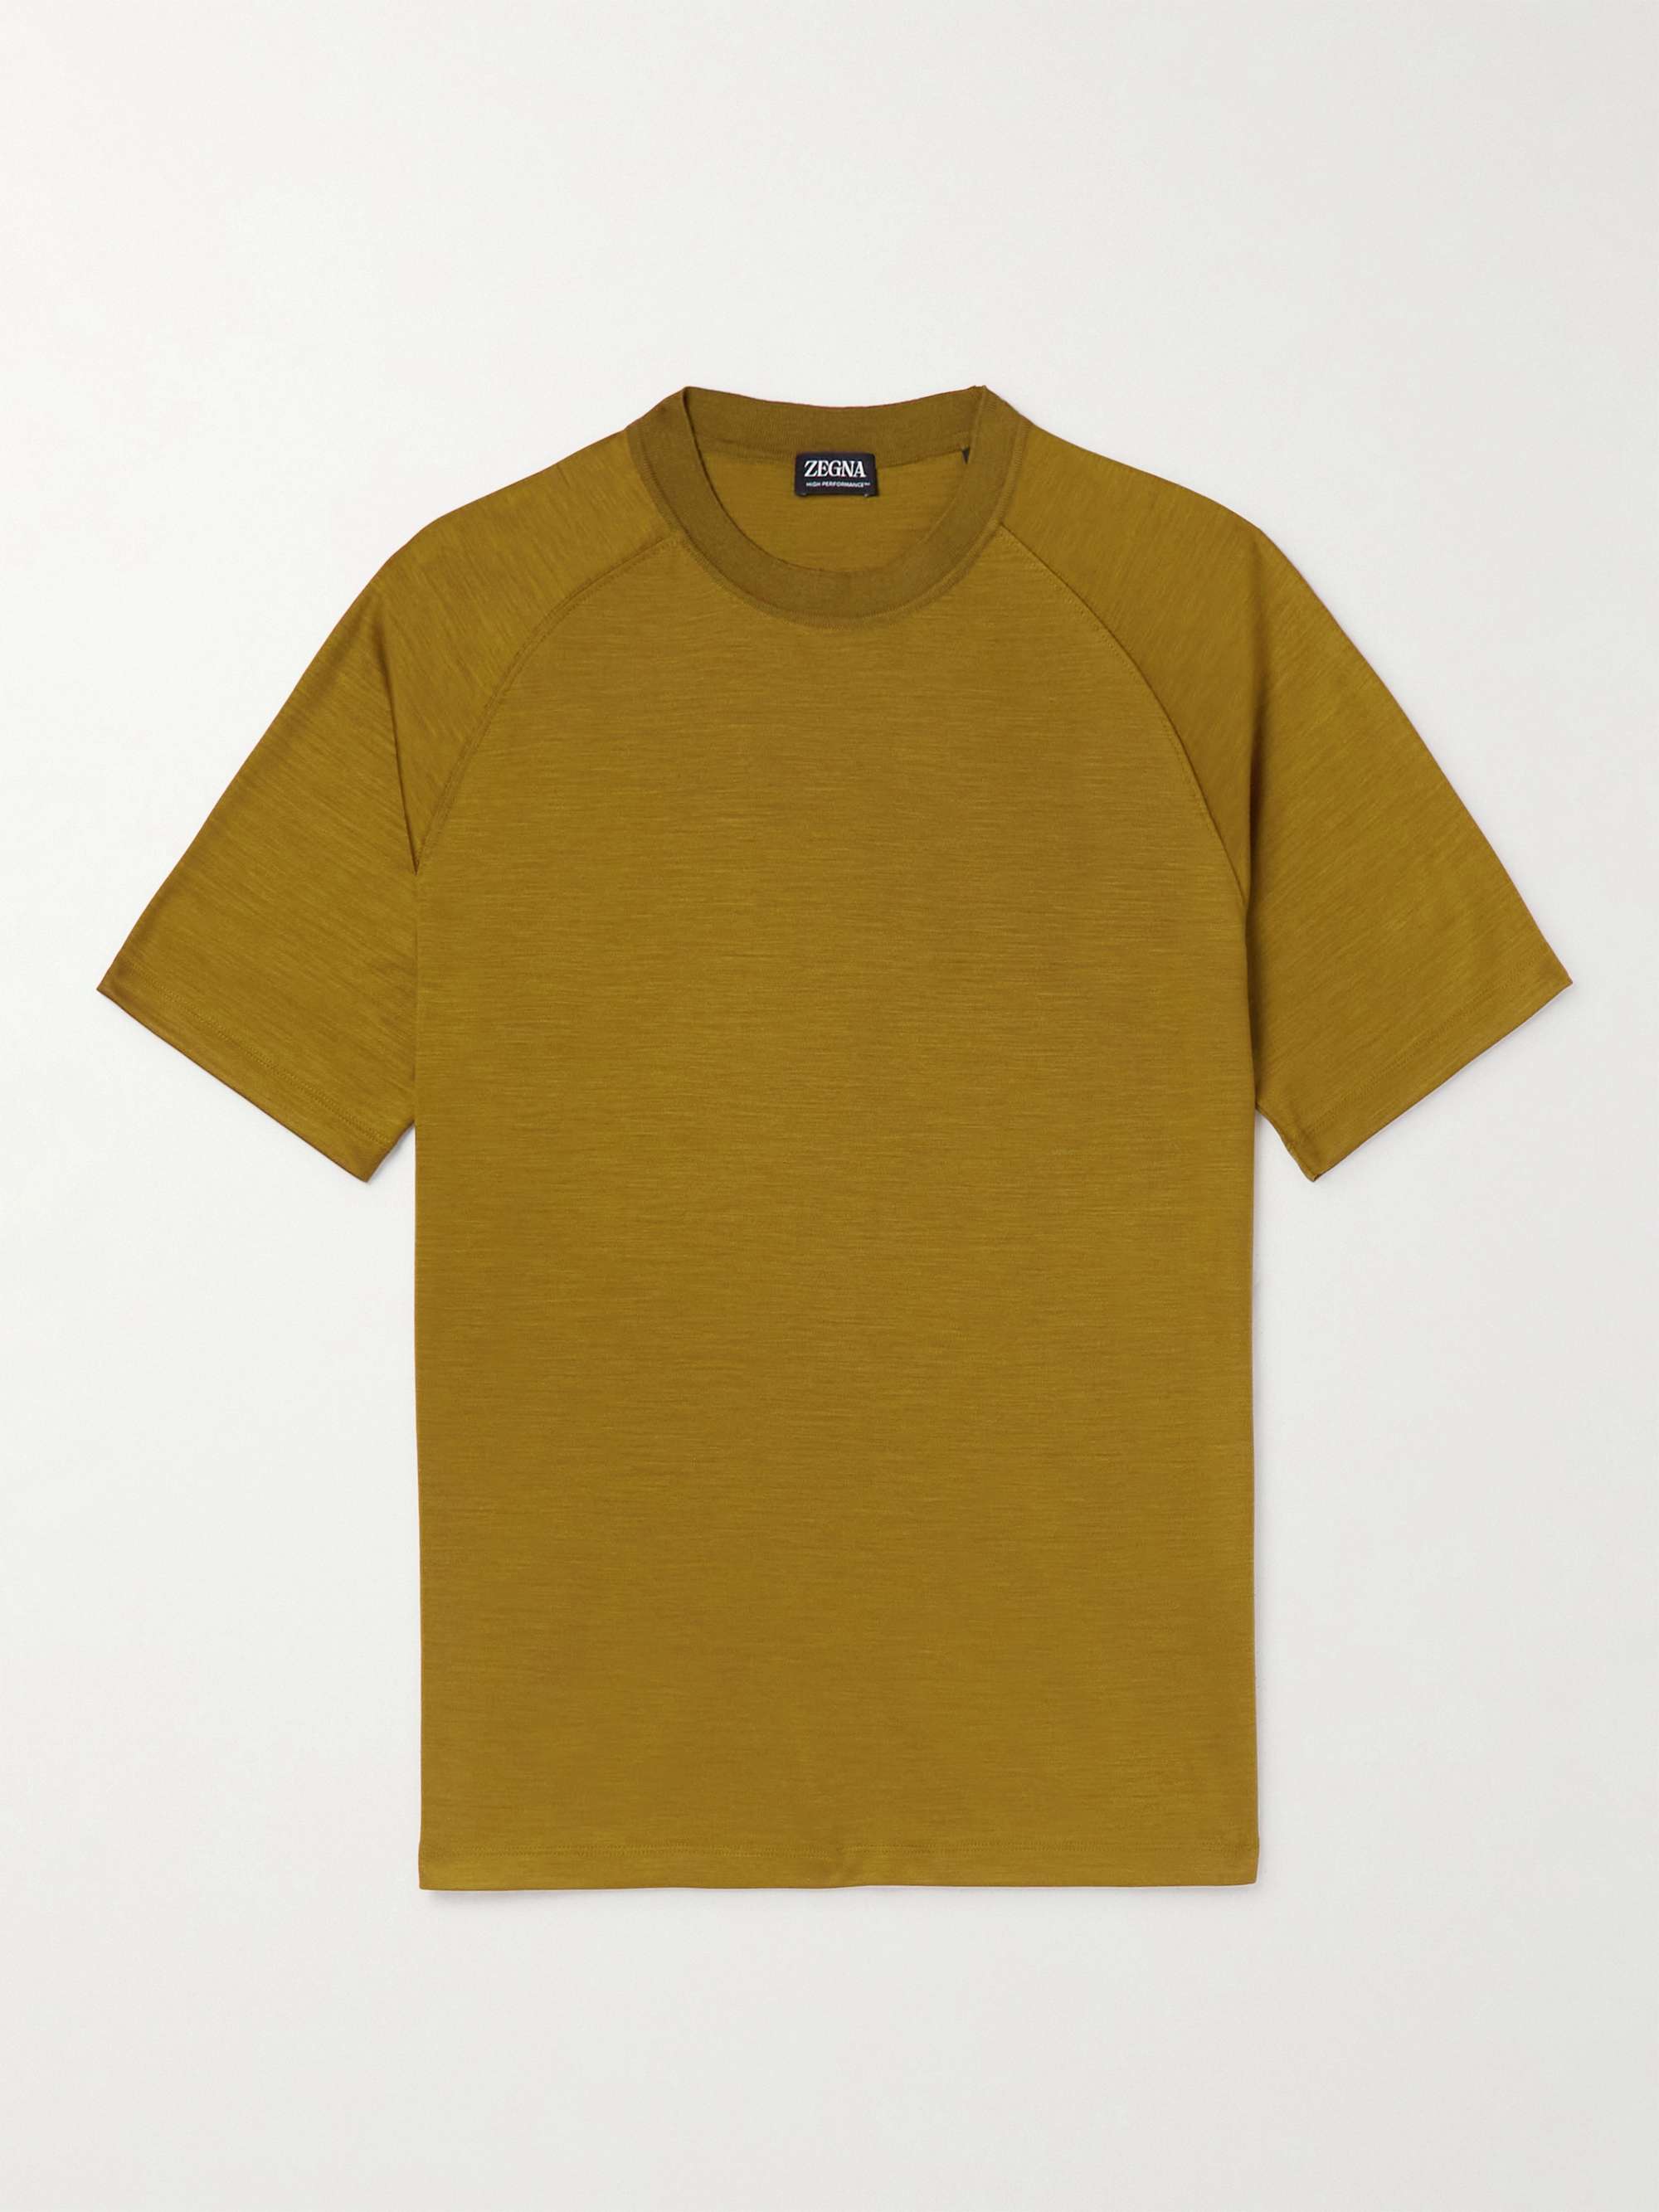 ZEGNA Wool T-Shirt